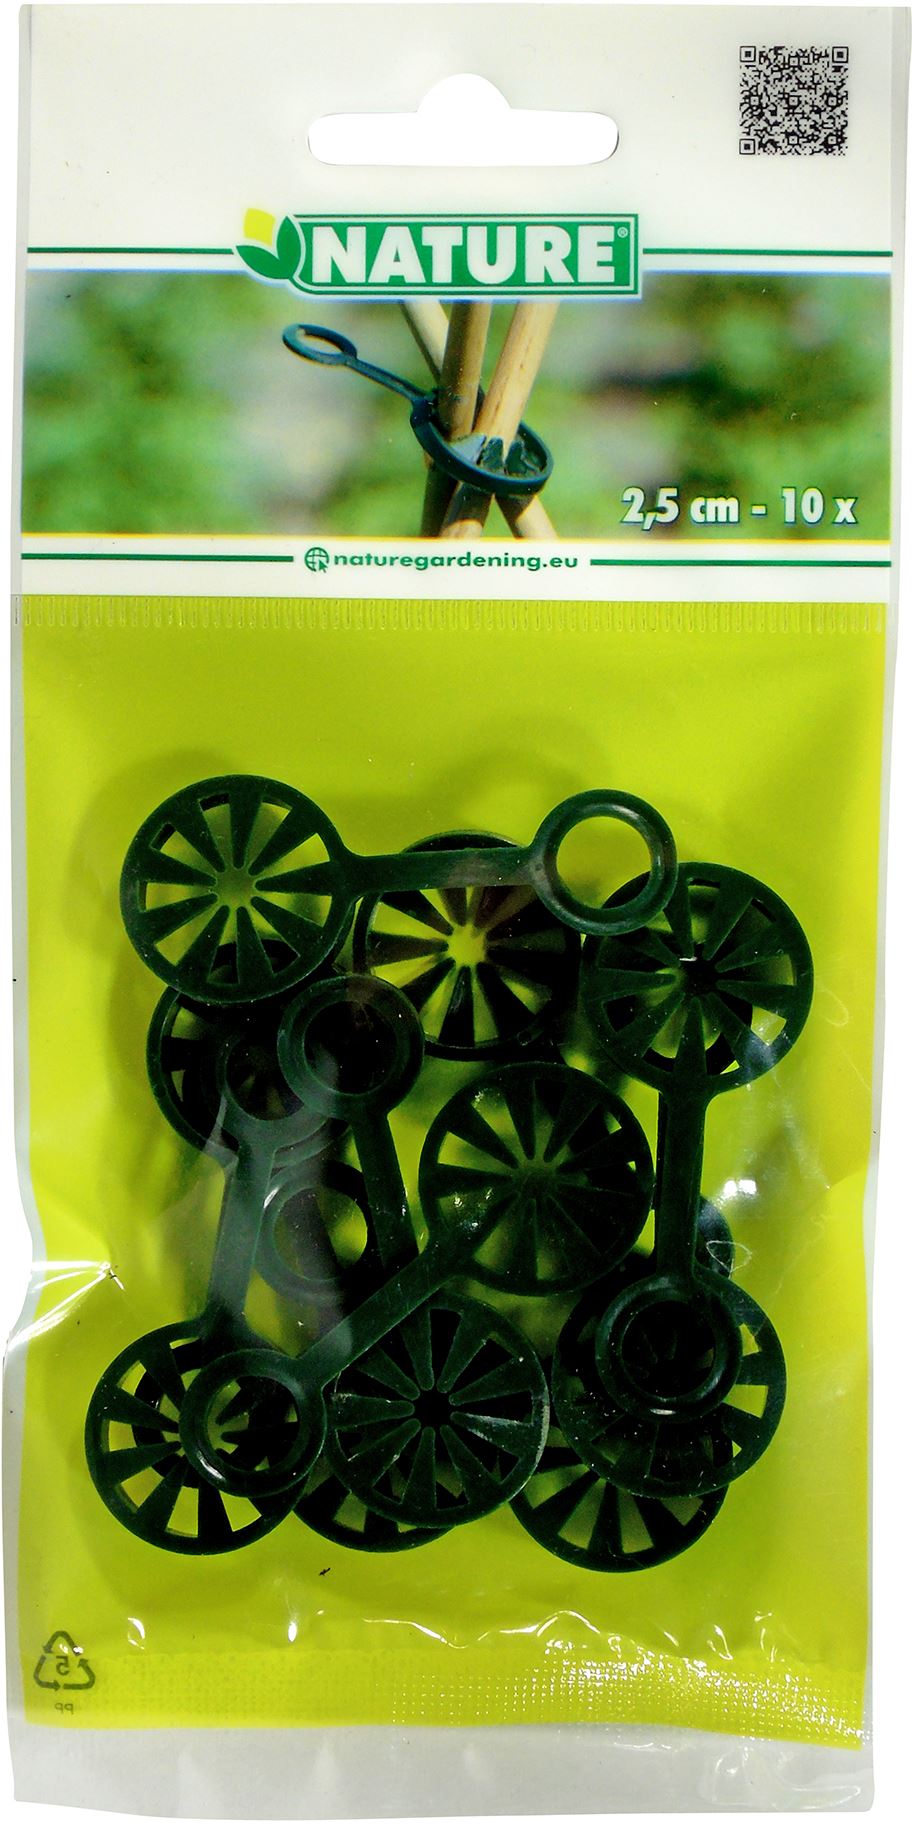 Kunststof-ring-voor-plantstokken-wigwam-groen-8-mm-set-a-10-stuks